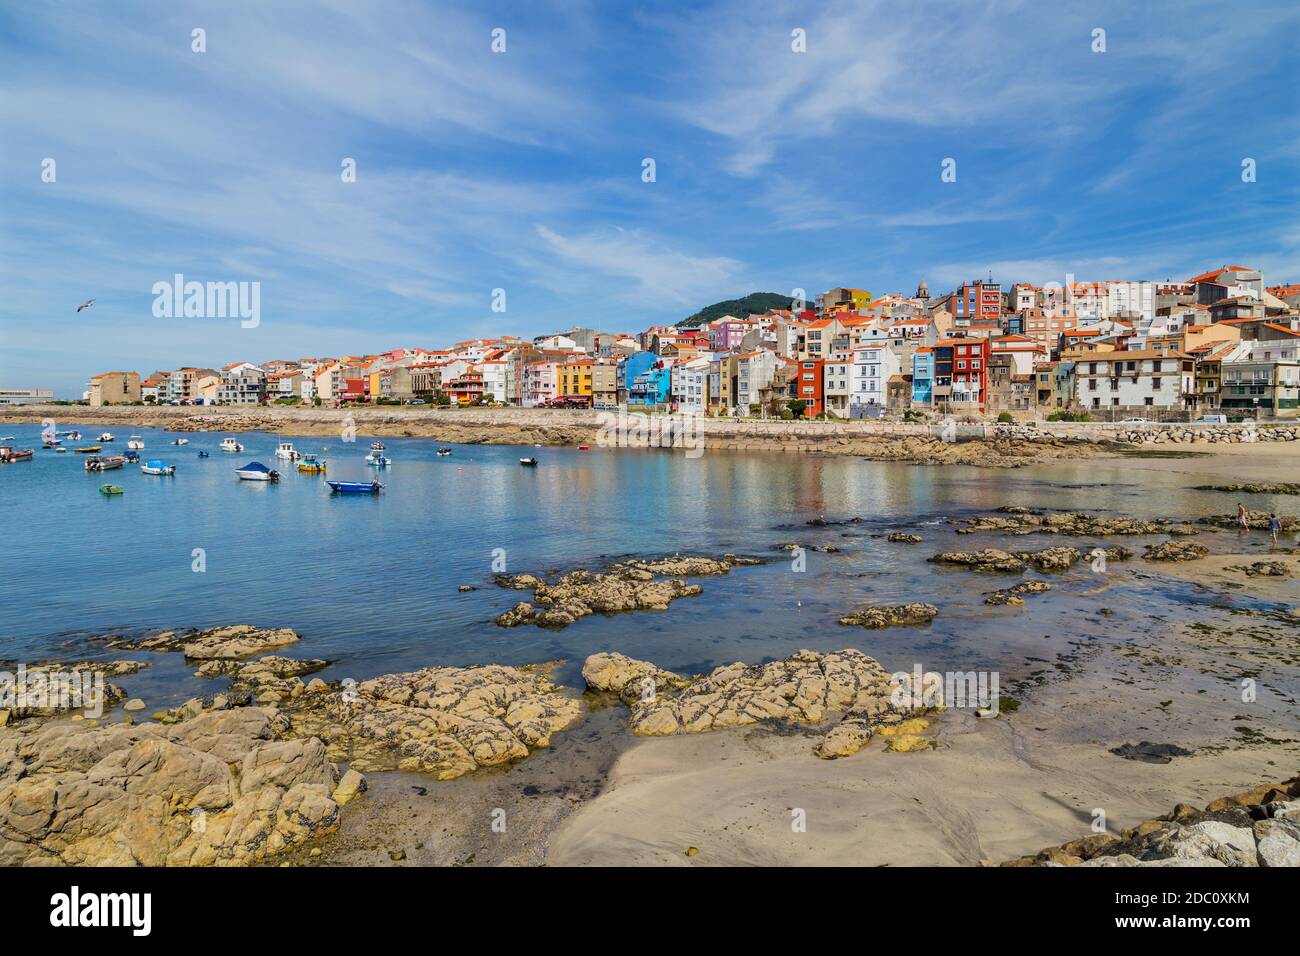 VILA PRAIA DE ANCORA, PORTUGAL - JULY 5, 2020: Port and the city of Vila Praia de Ancora Portugal, Portugal. Stock Photo